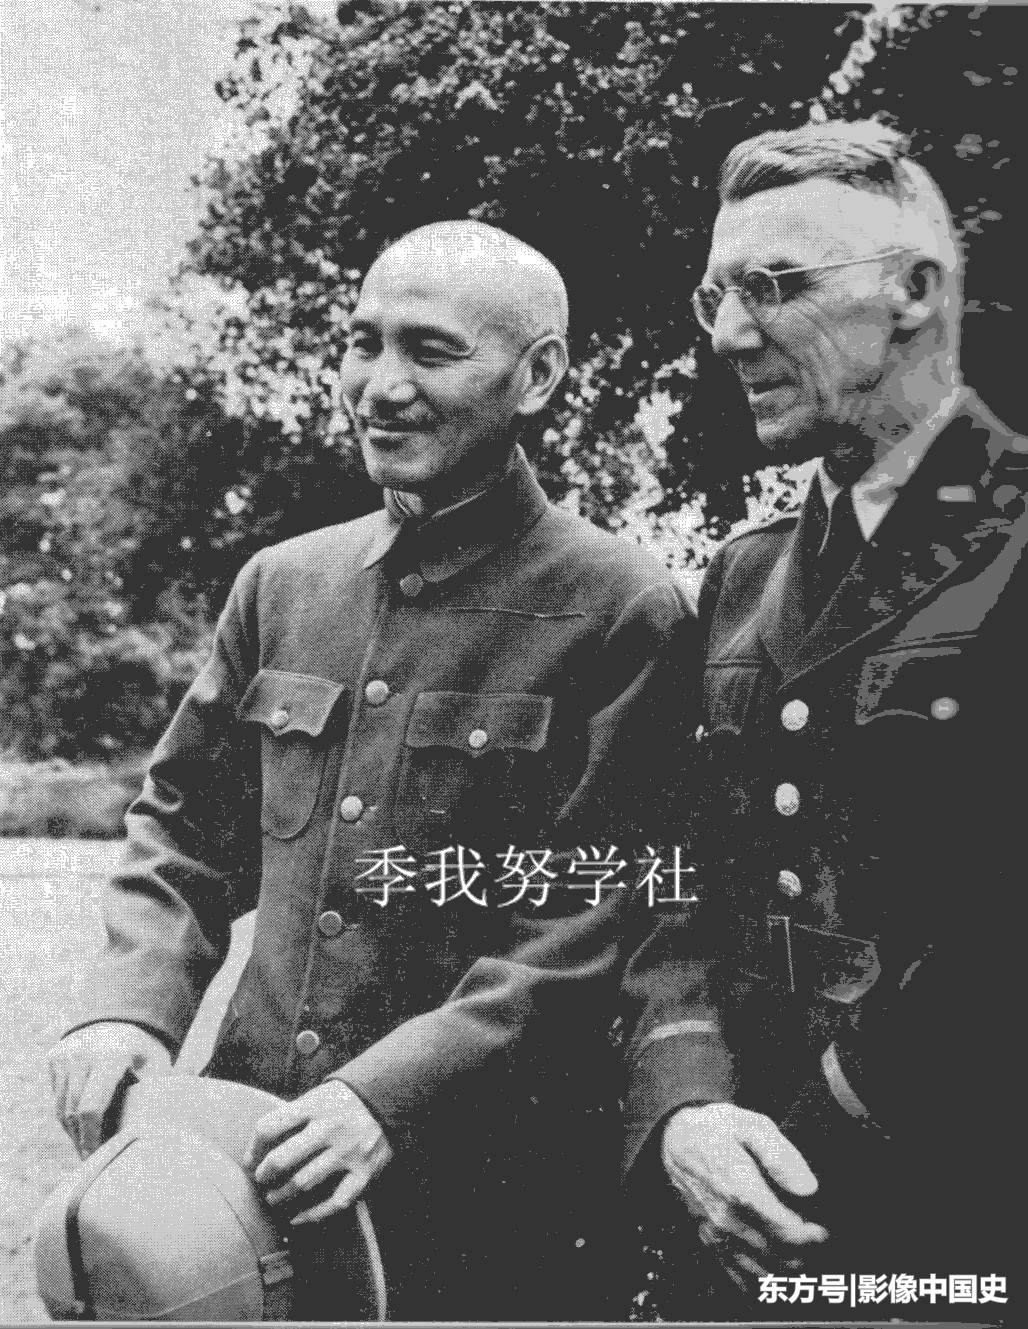 都说蒋介石、史迪威关系恶劣 照片上笑容满面的两人分明处于蜜月 第1页